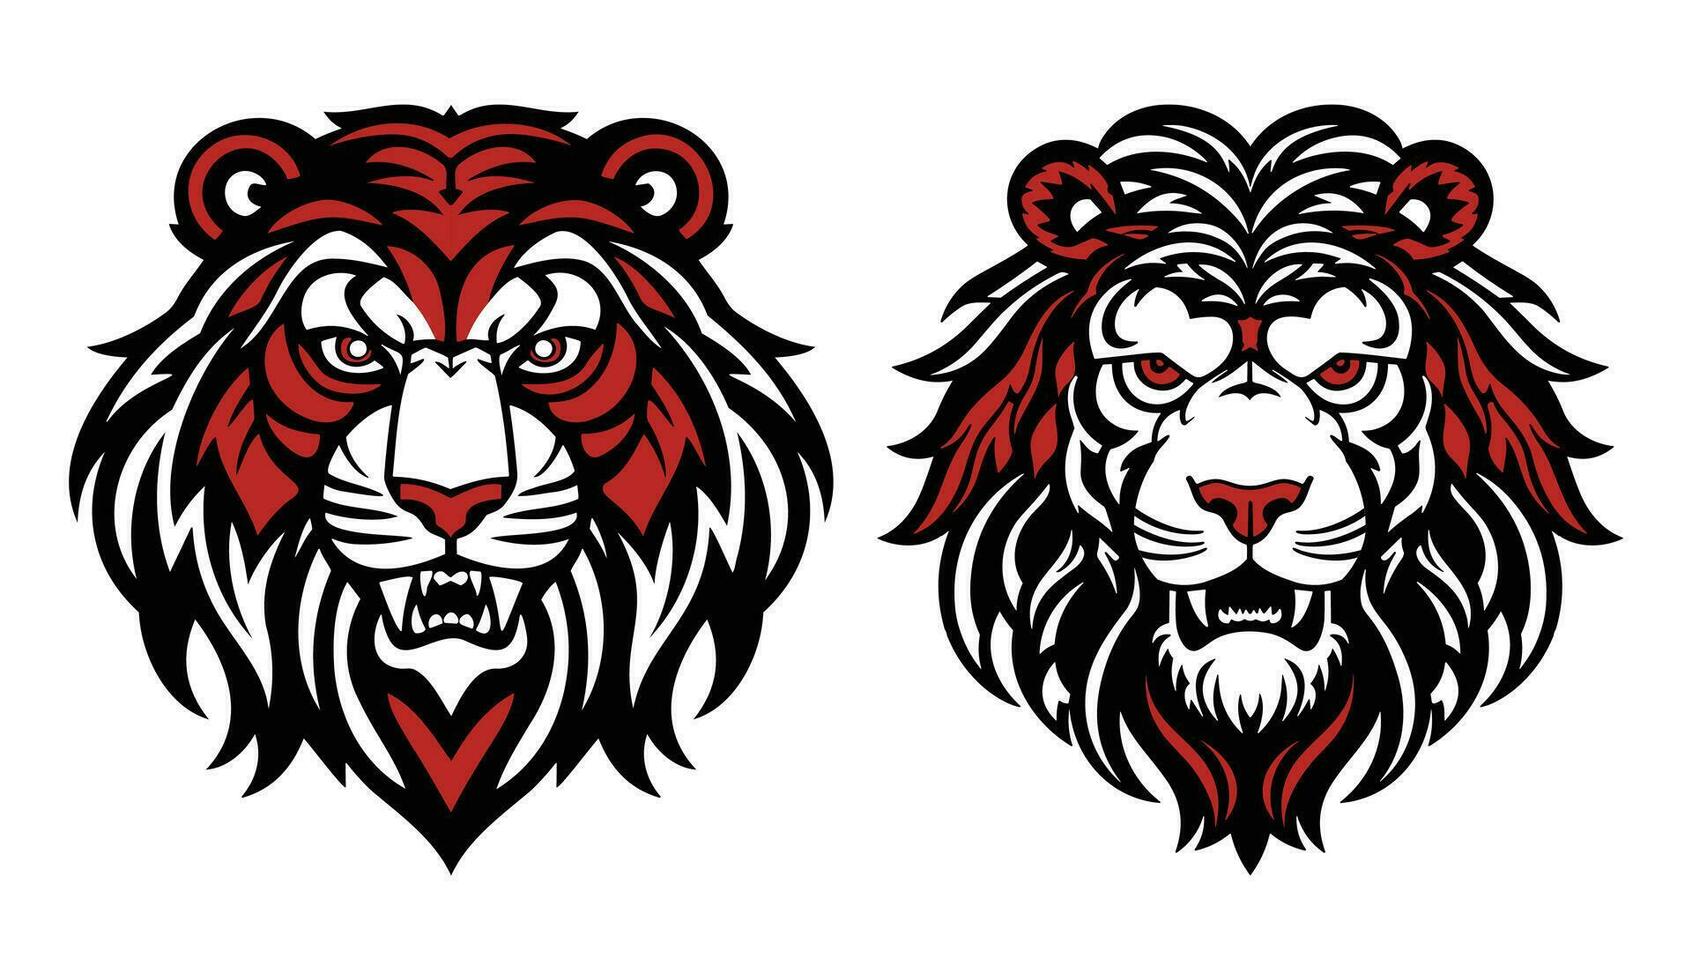 tijger woede gezicht met rood en zwart kleur vector illustratie mascotte logo vector